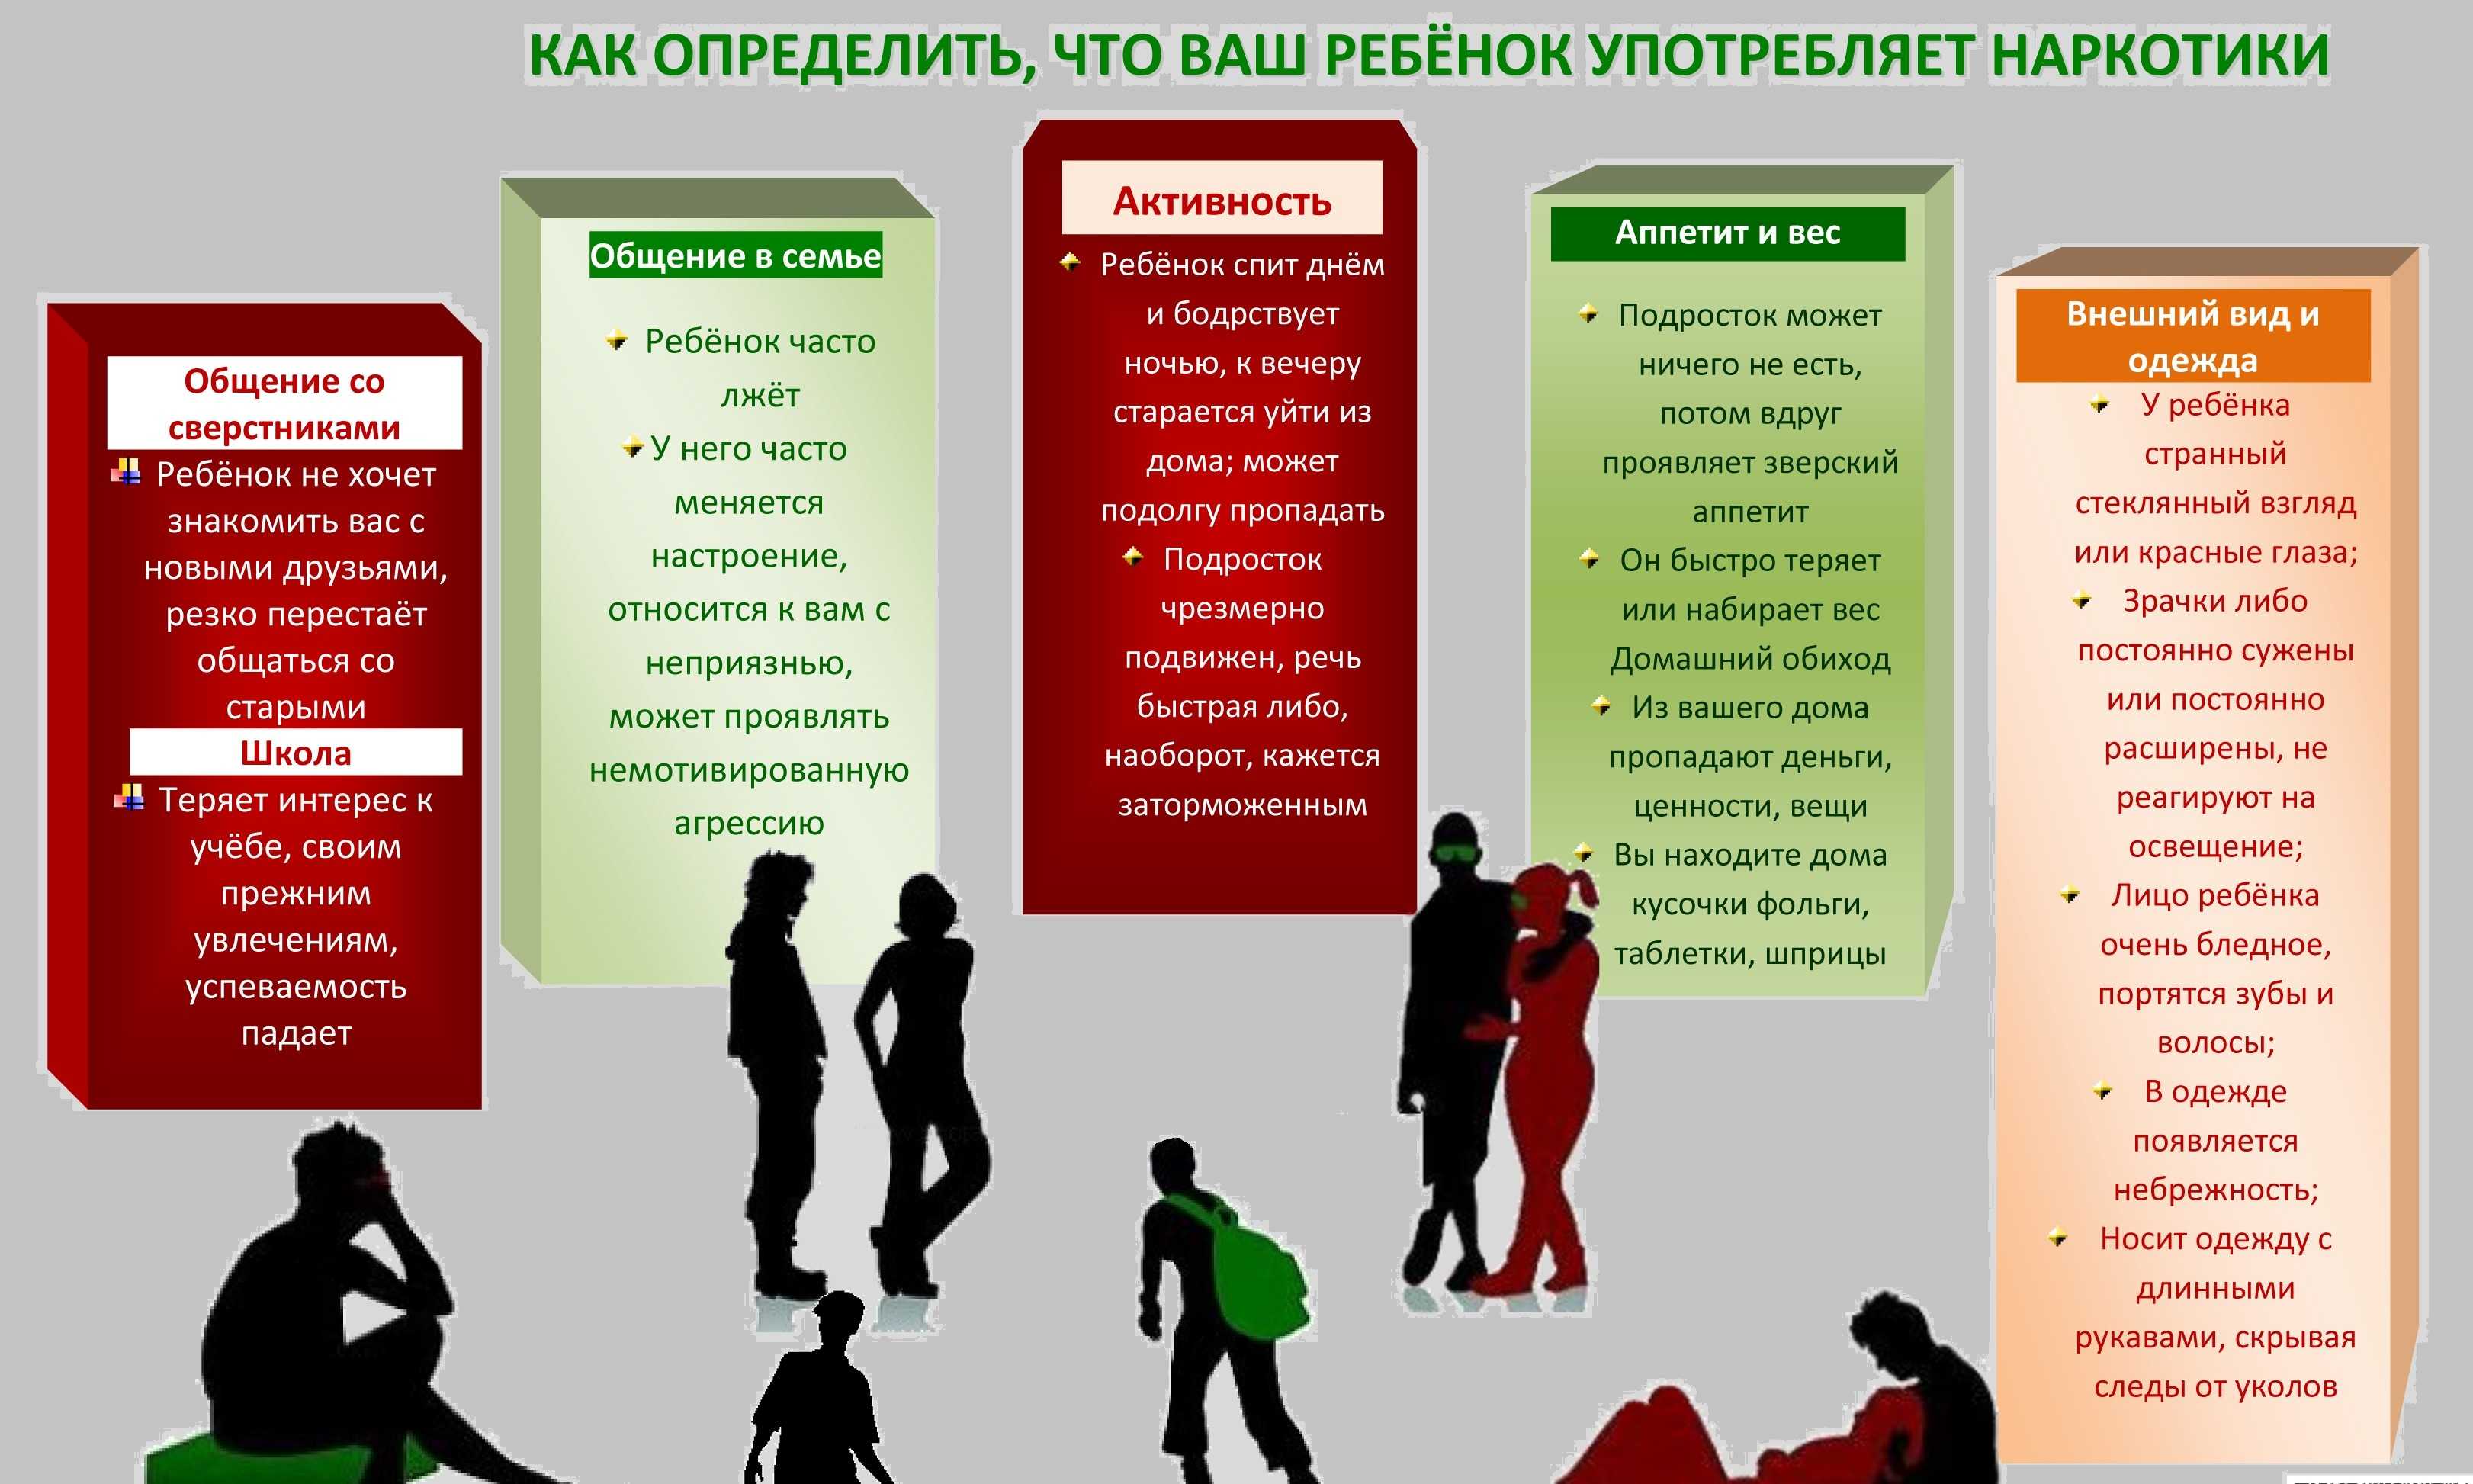 Последовательность действий родителей при подозрении на употребление наркотиков ребёнком | контент-платформа pandia.ru